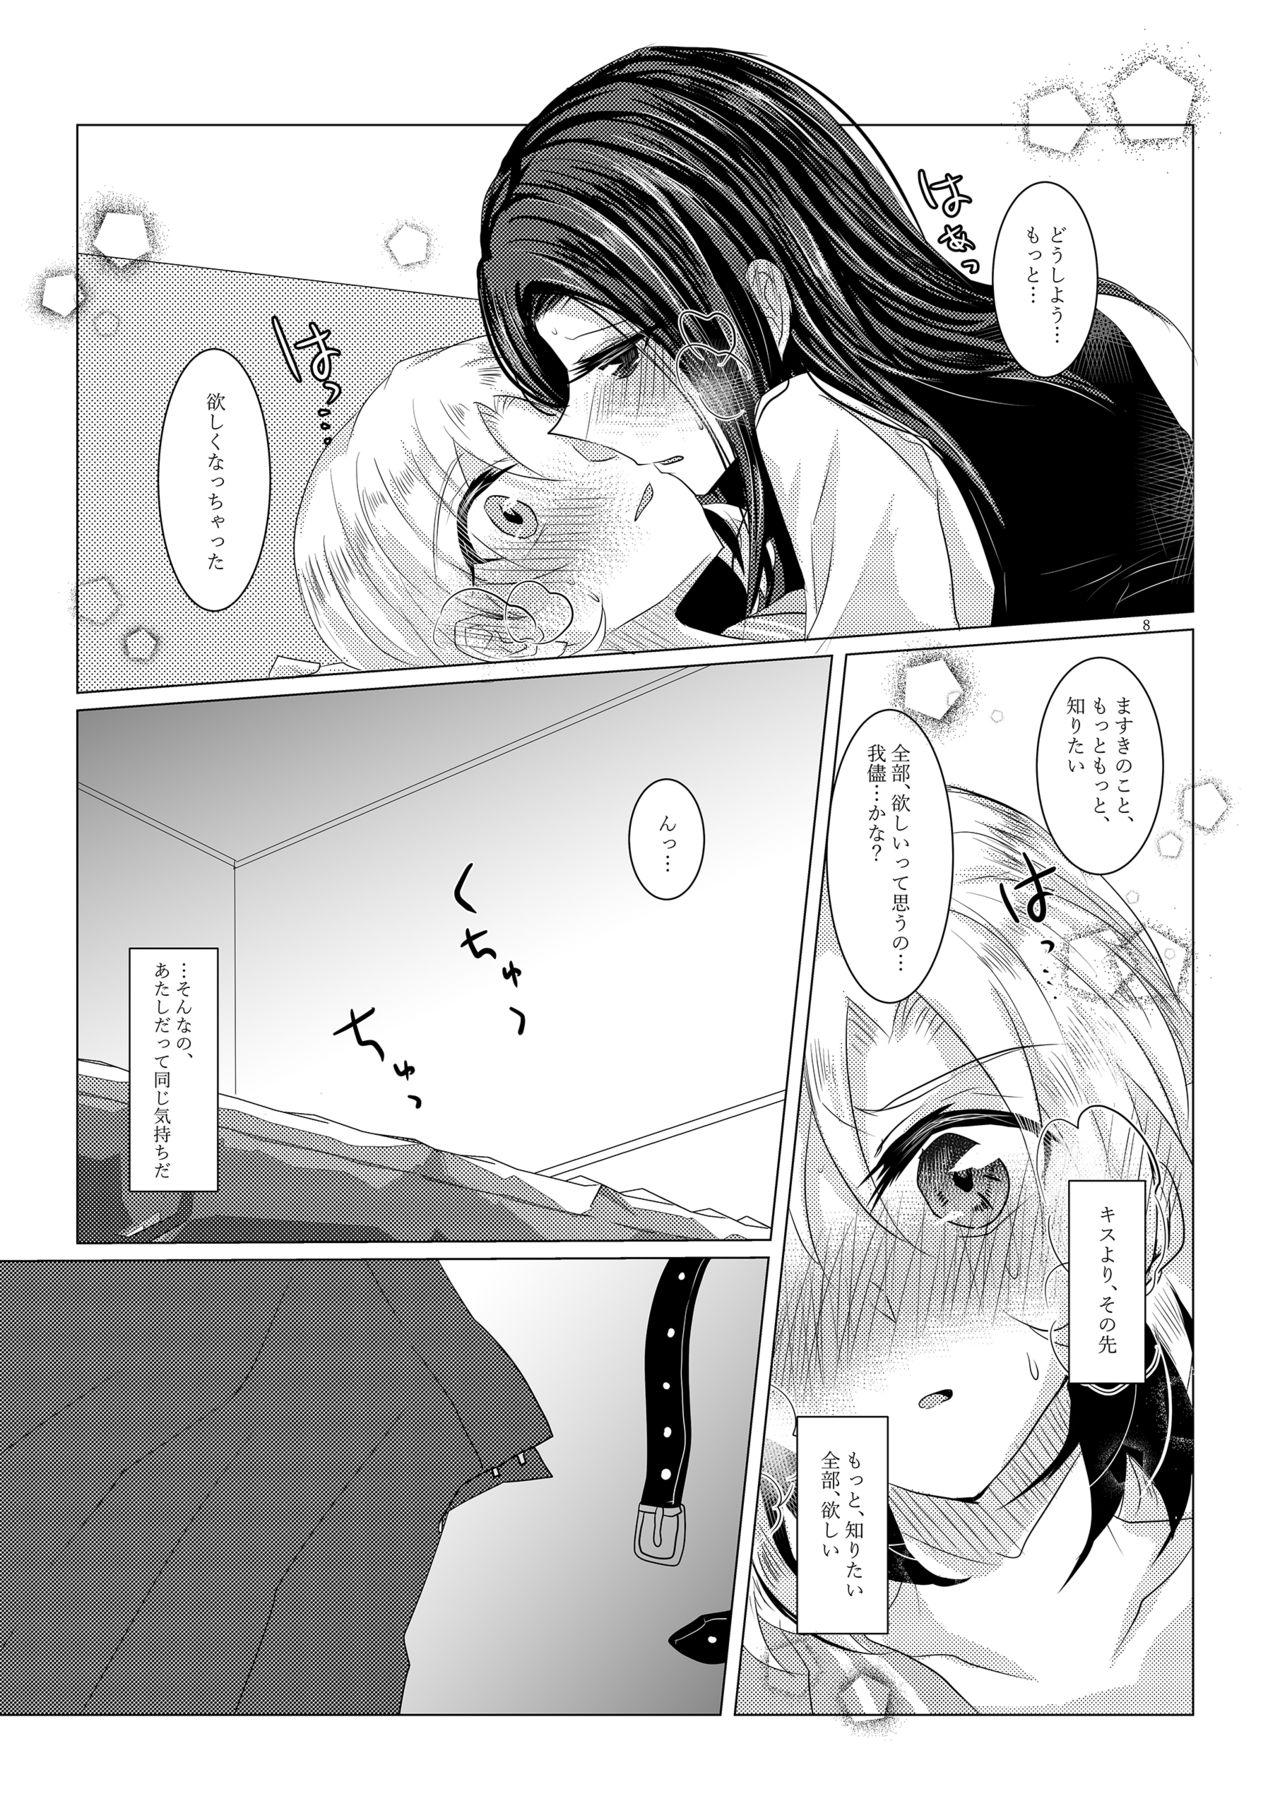 Gordita Sayokyoku yori mo Yasashii Kiss o shite - Bang dream Fleshlight - Page 7